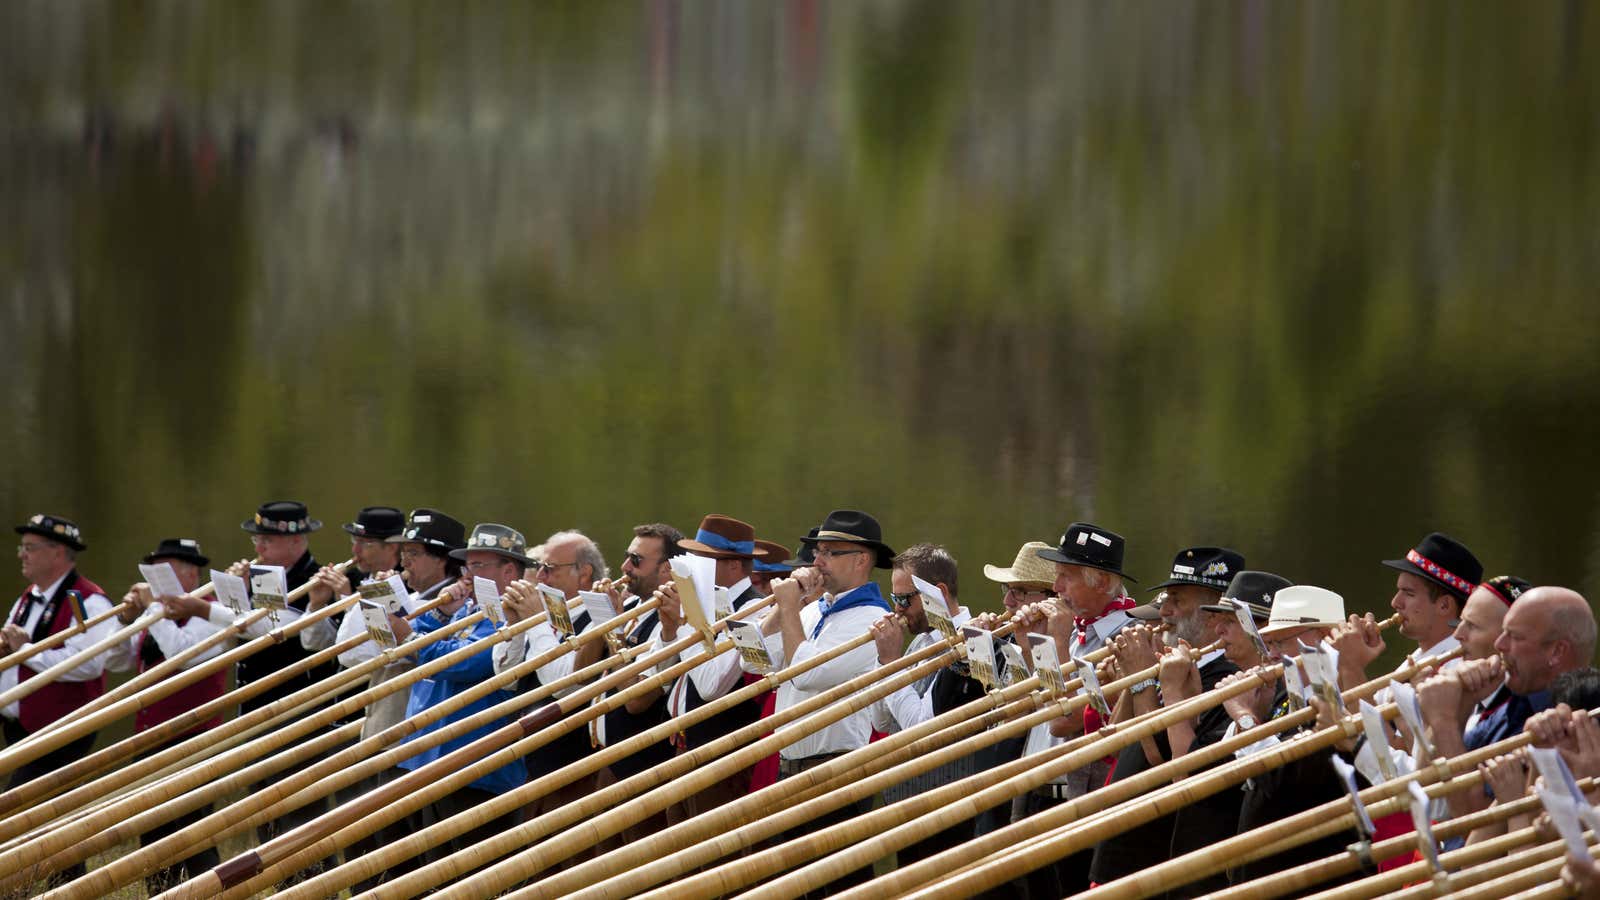 Alpenhorn players perform along the Lac de Tracouet.